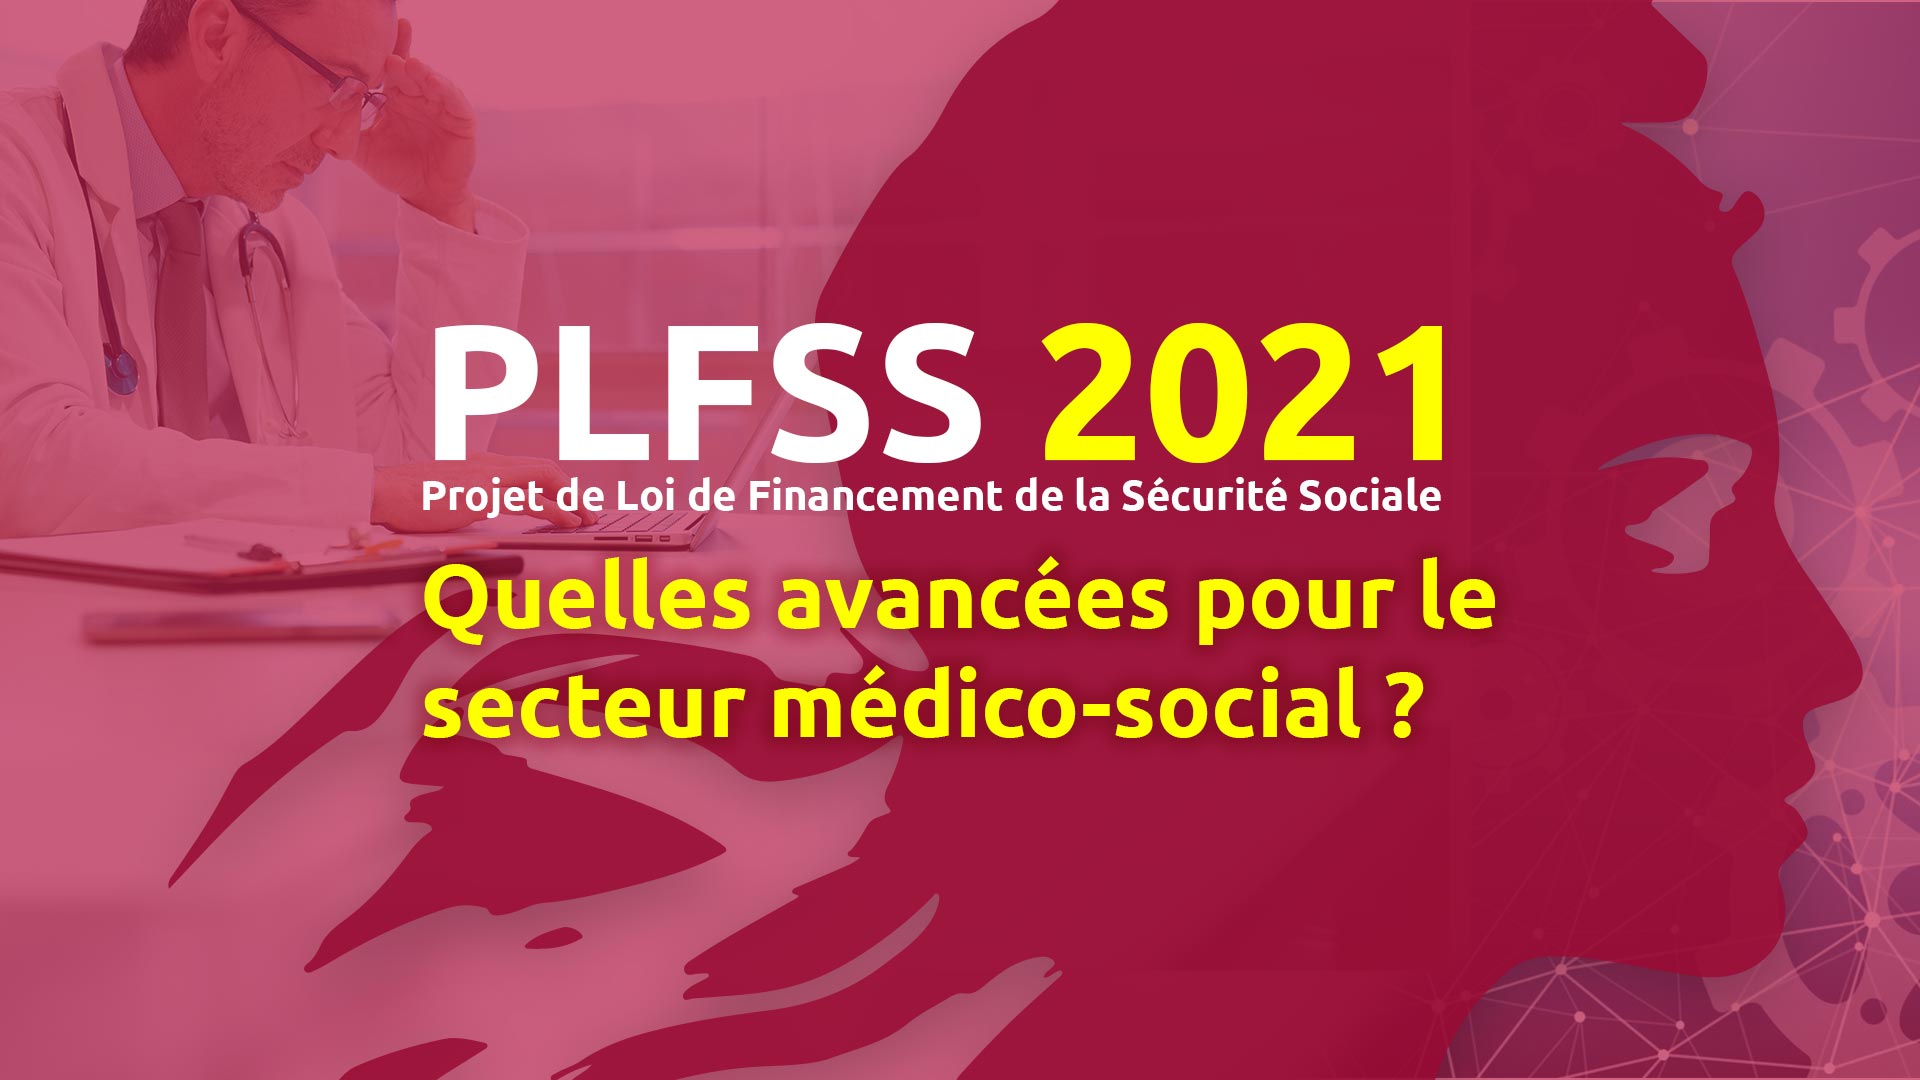 Projet-de-Loi-de-Financement-de-la-Securite-Sociale-2021-PLFSS--Quelles-avancees-pour-le-secteur-medico-social-MGDIS